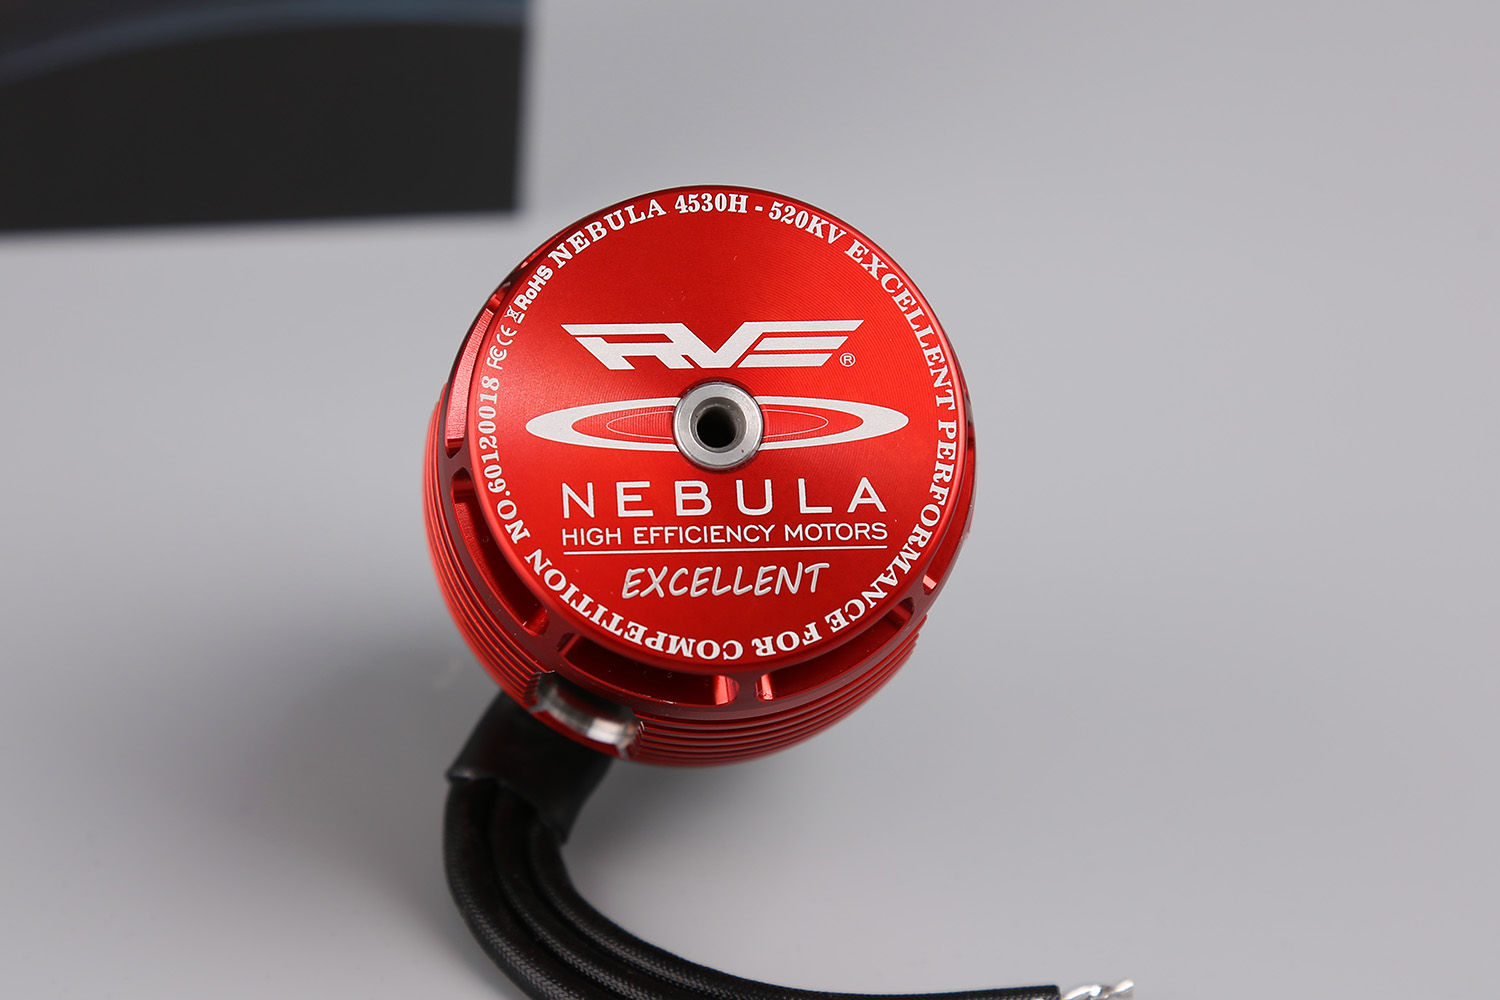 NEBULA 4530H-520KV 卓越版高功率马达 MK50006(图2)